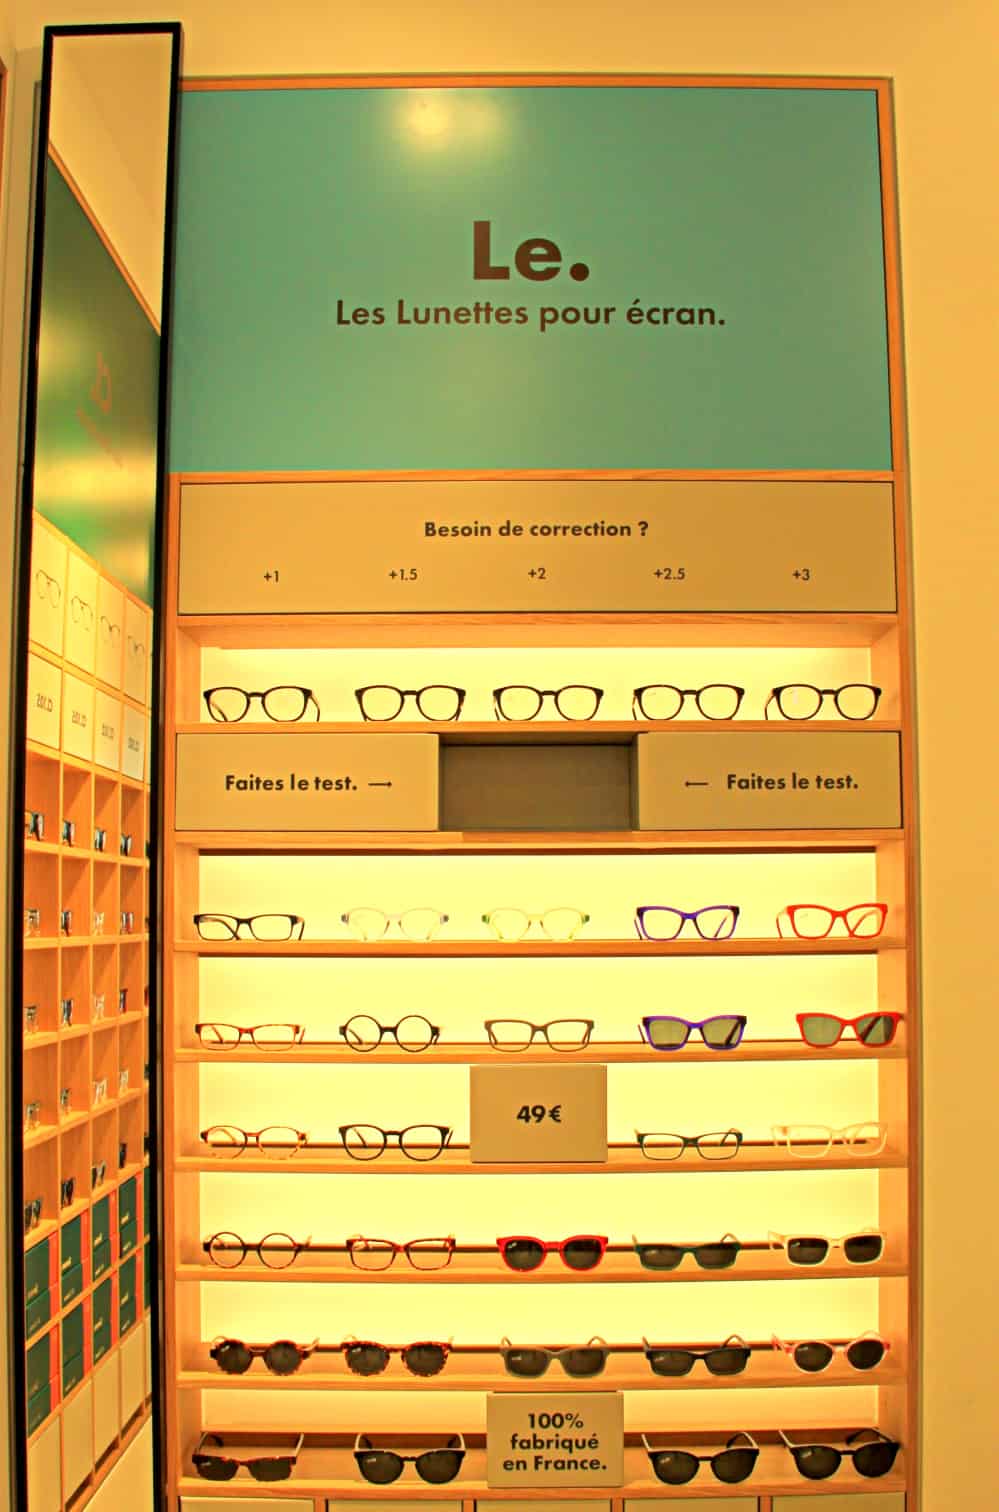 Sensee, [Sensee] Découvrez les nouvelles lunettes pas chères 100% made in France !, Made in Marseille